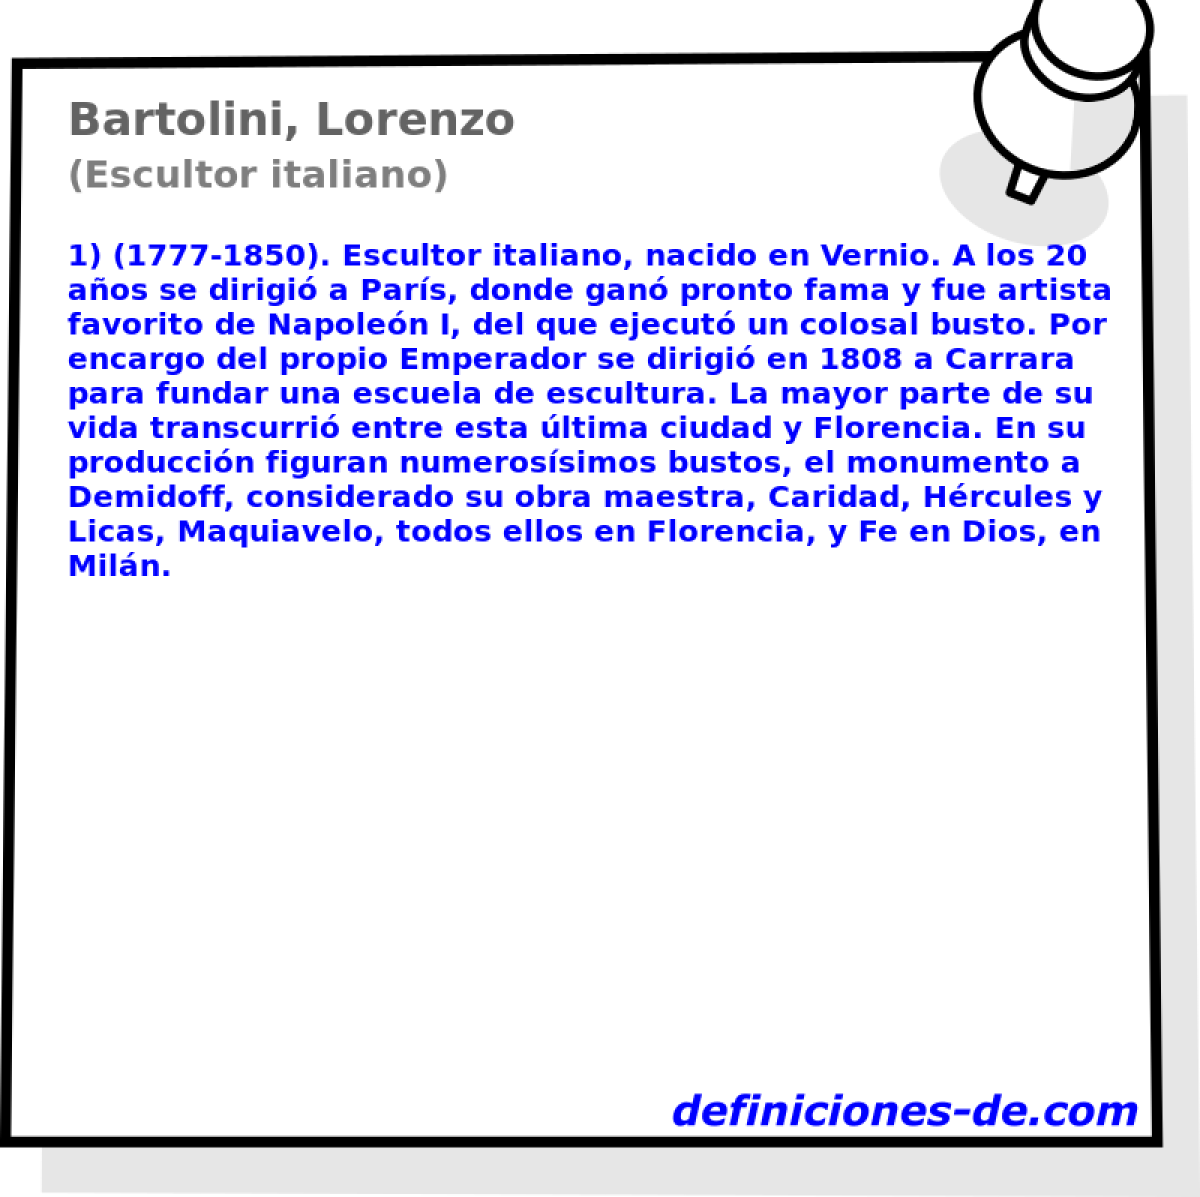 Bartolini, Lorenzo (Escultor italiano)